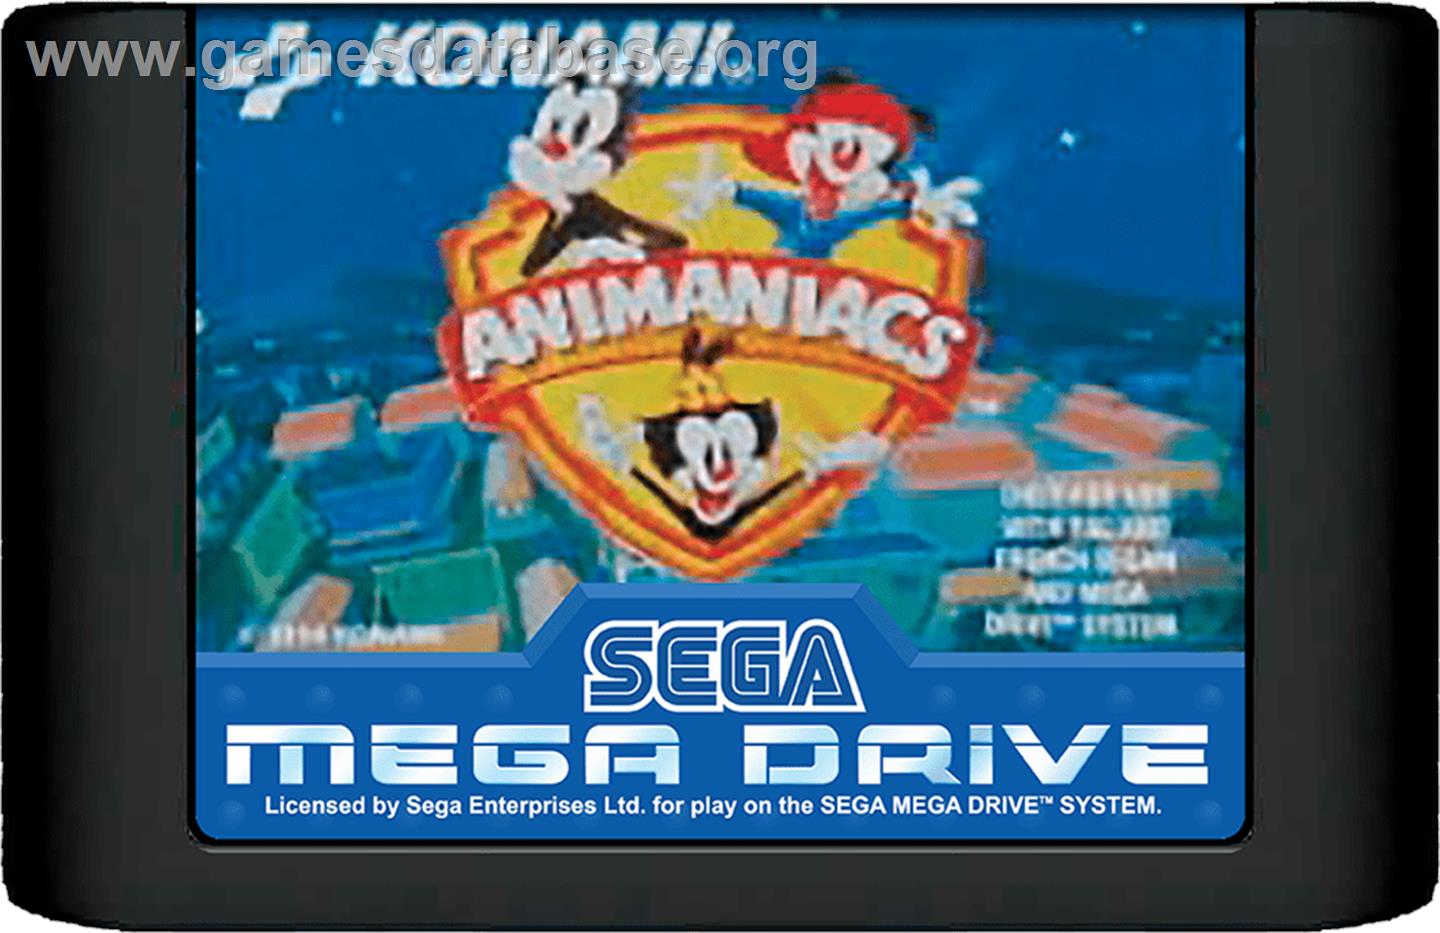 Animaniacs - Sega Genesis - Artwork - Cartridge